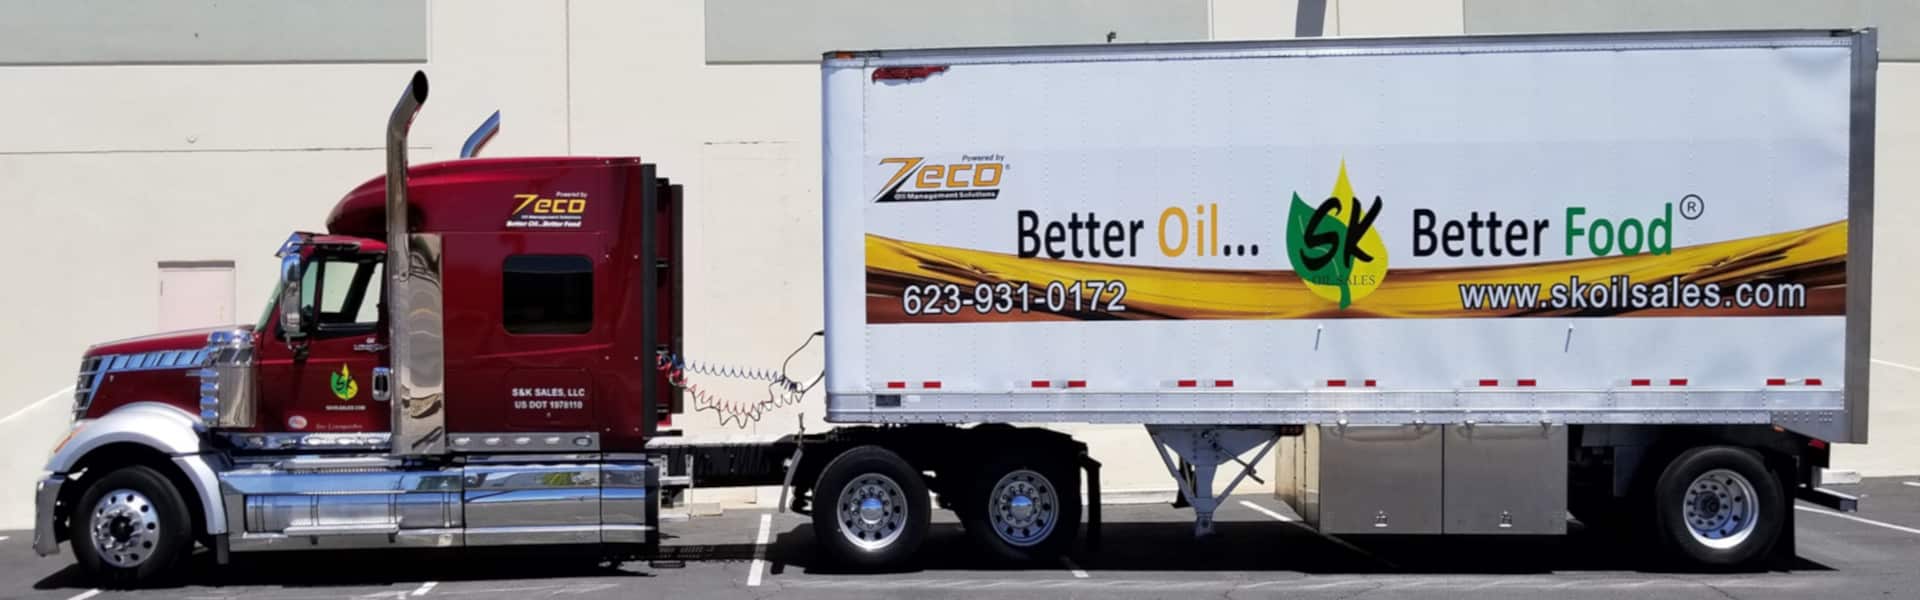 SK Oil Sales Semi Trailer Truck